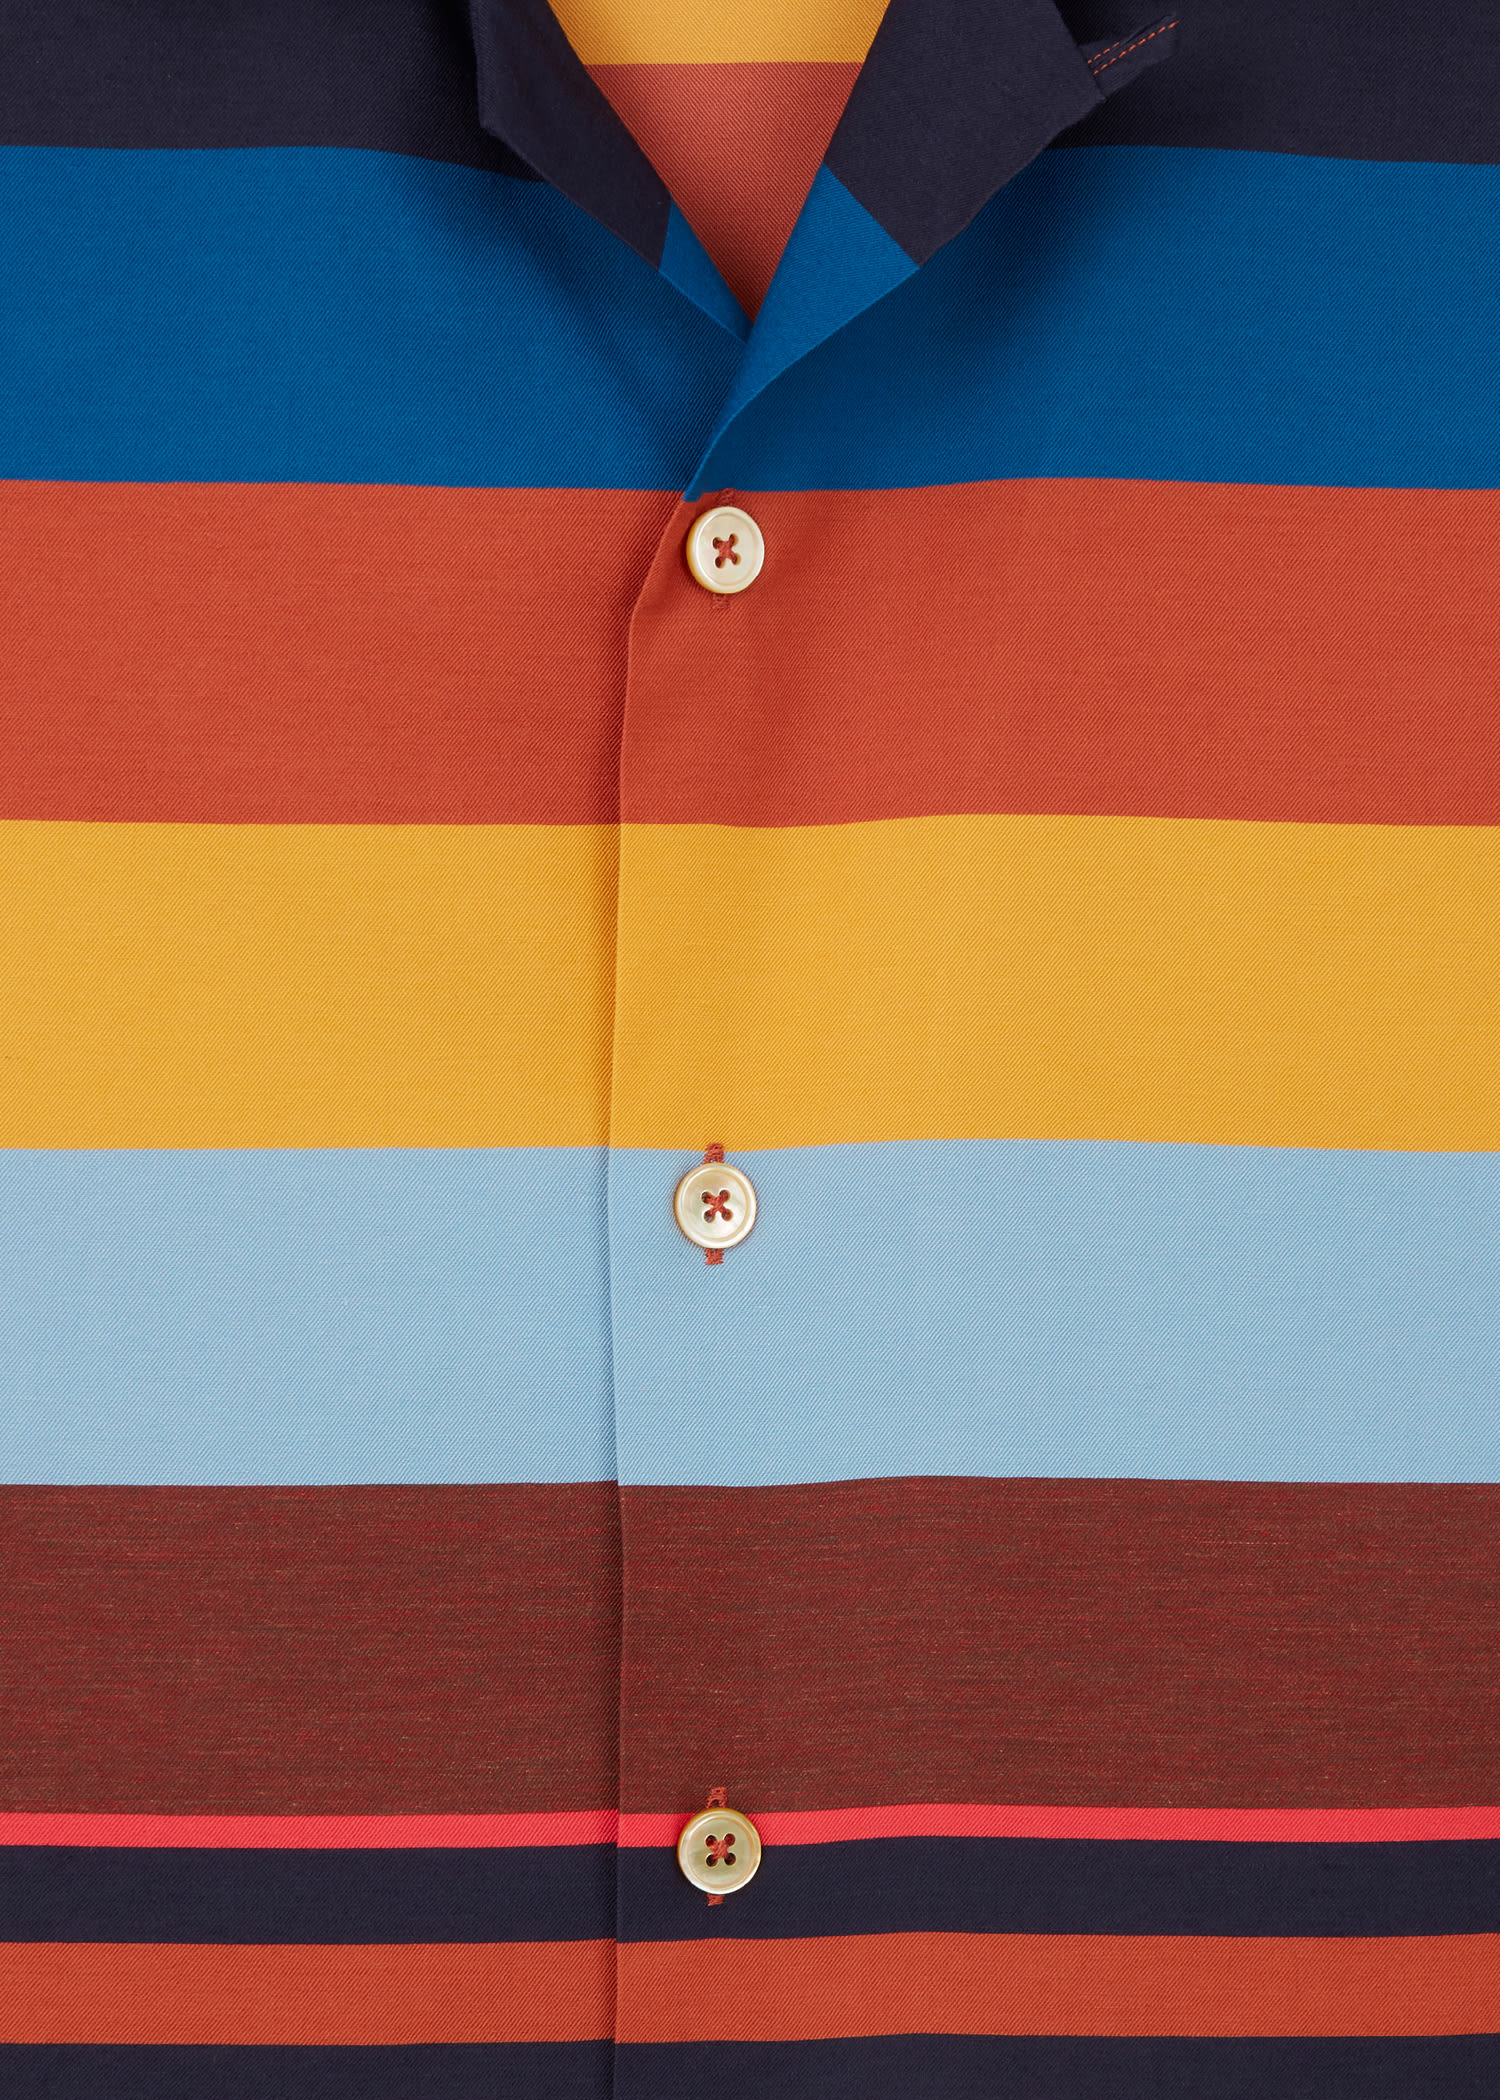 J Crew pour Homme à Manches Courtes Slim Fit Floral Shirt Rouge Bleu Moyen Blanc fabricants Standard prix de détail 54.50